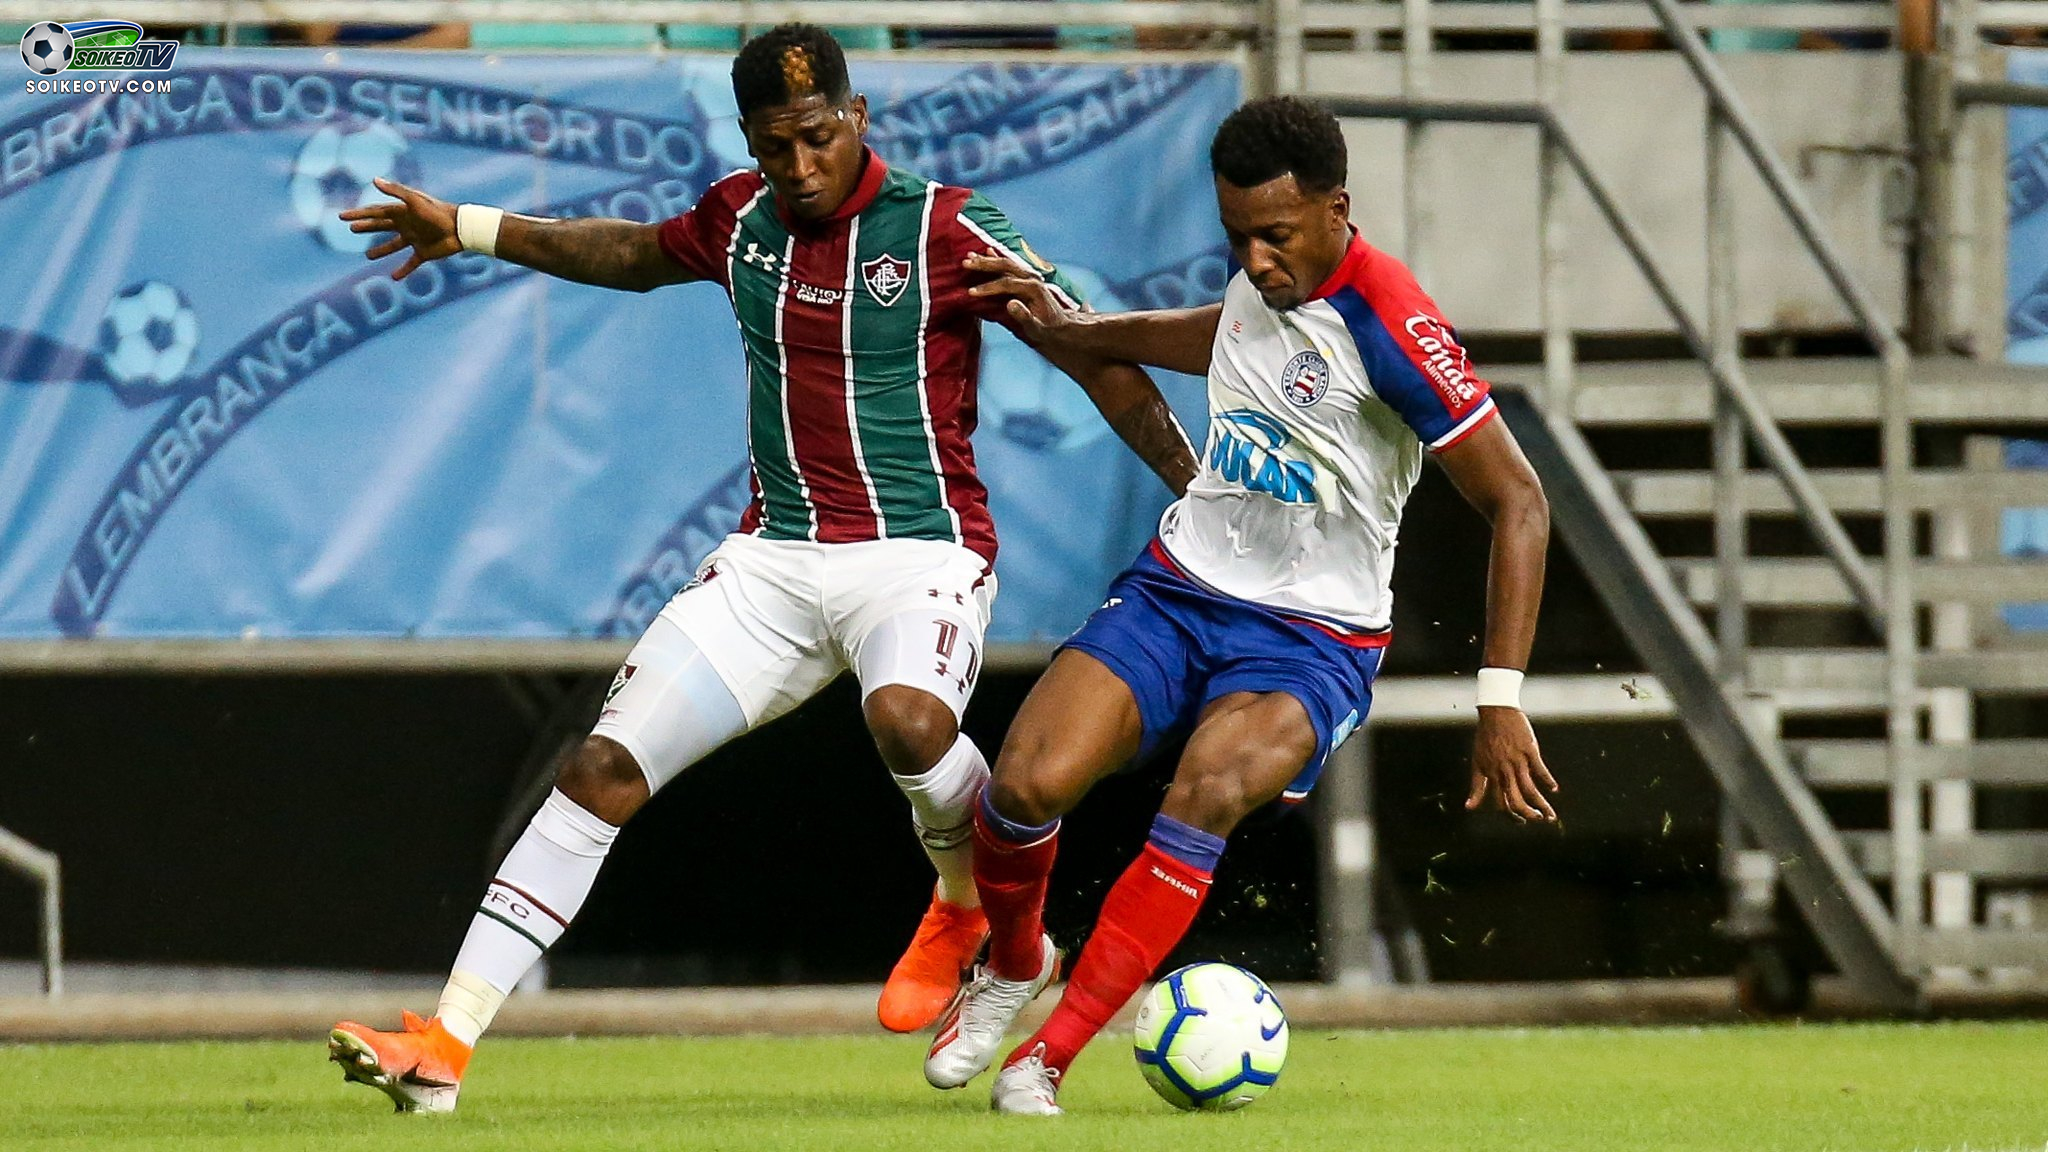 Soi-keo-Vasco-da-Gama-vs-Fluminense